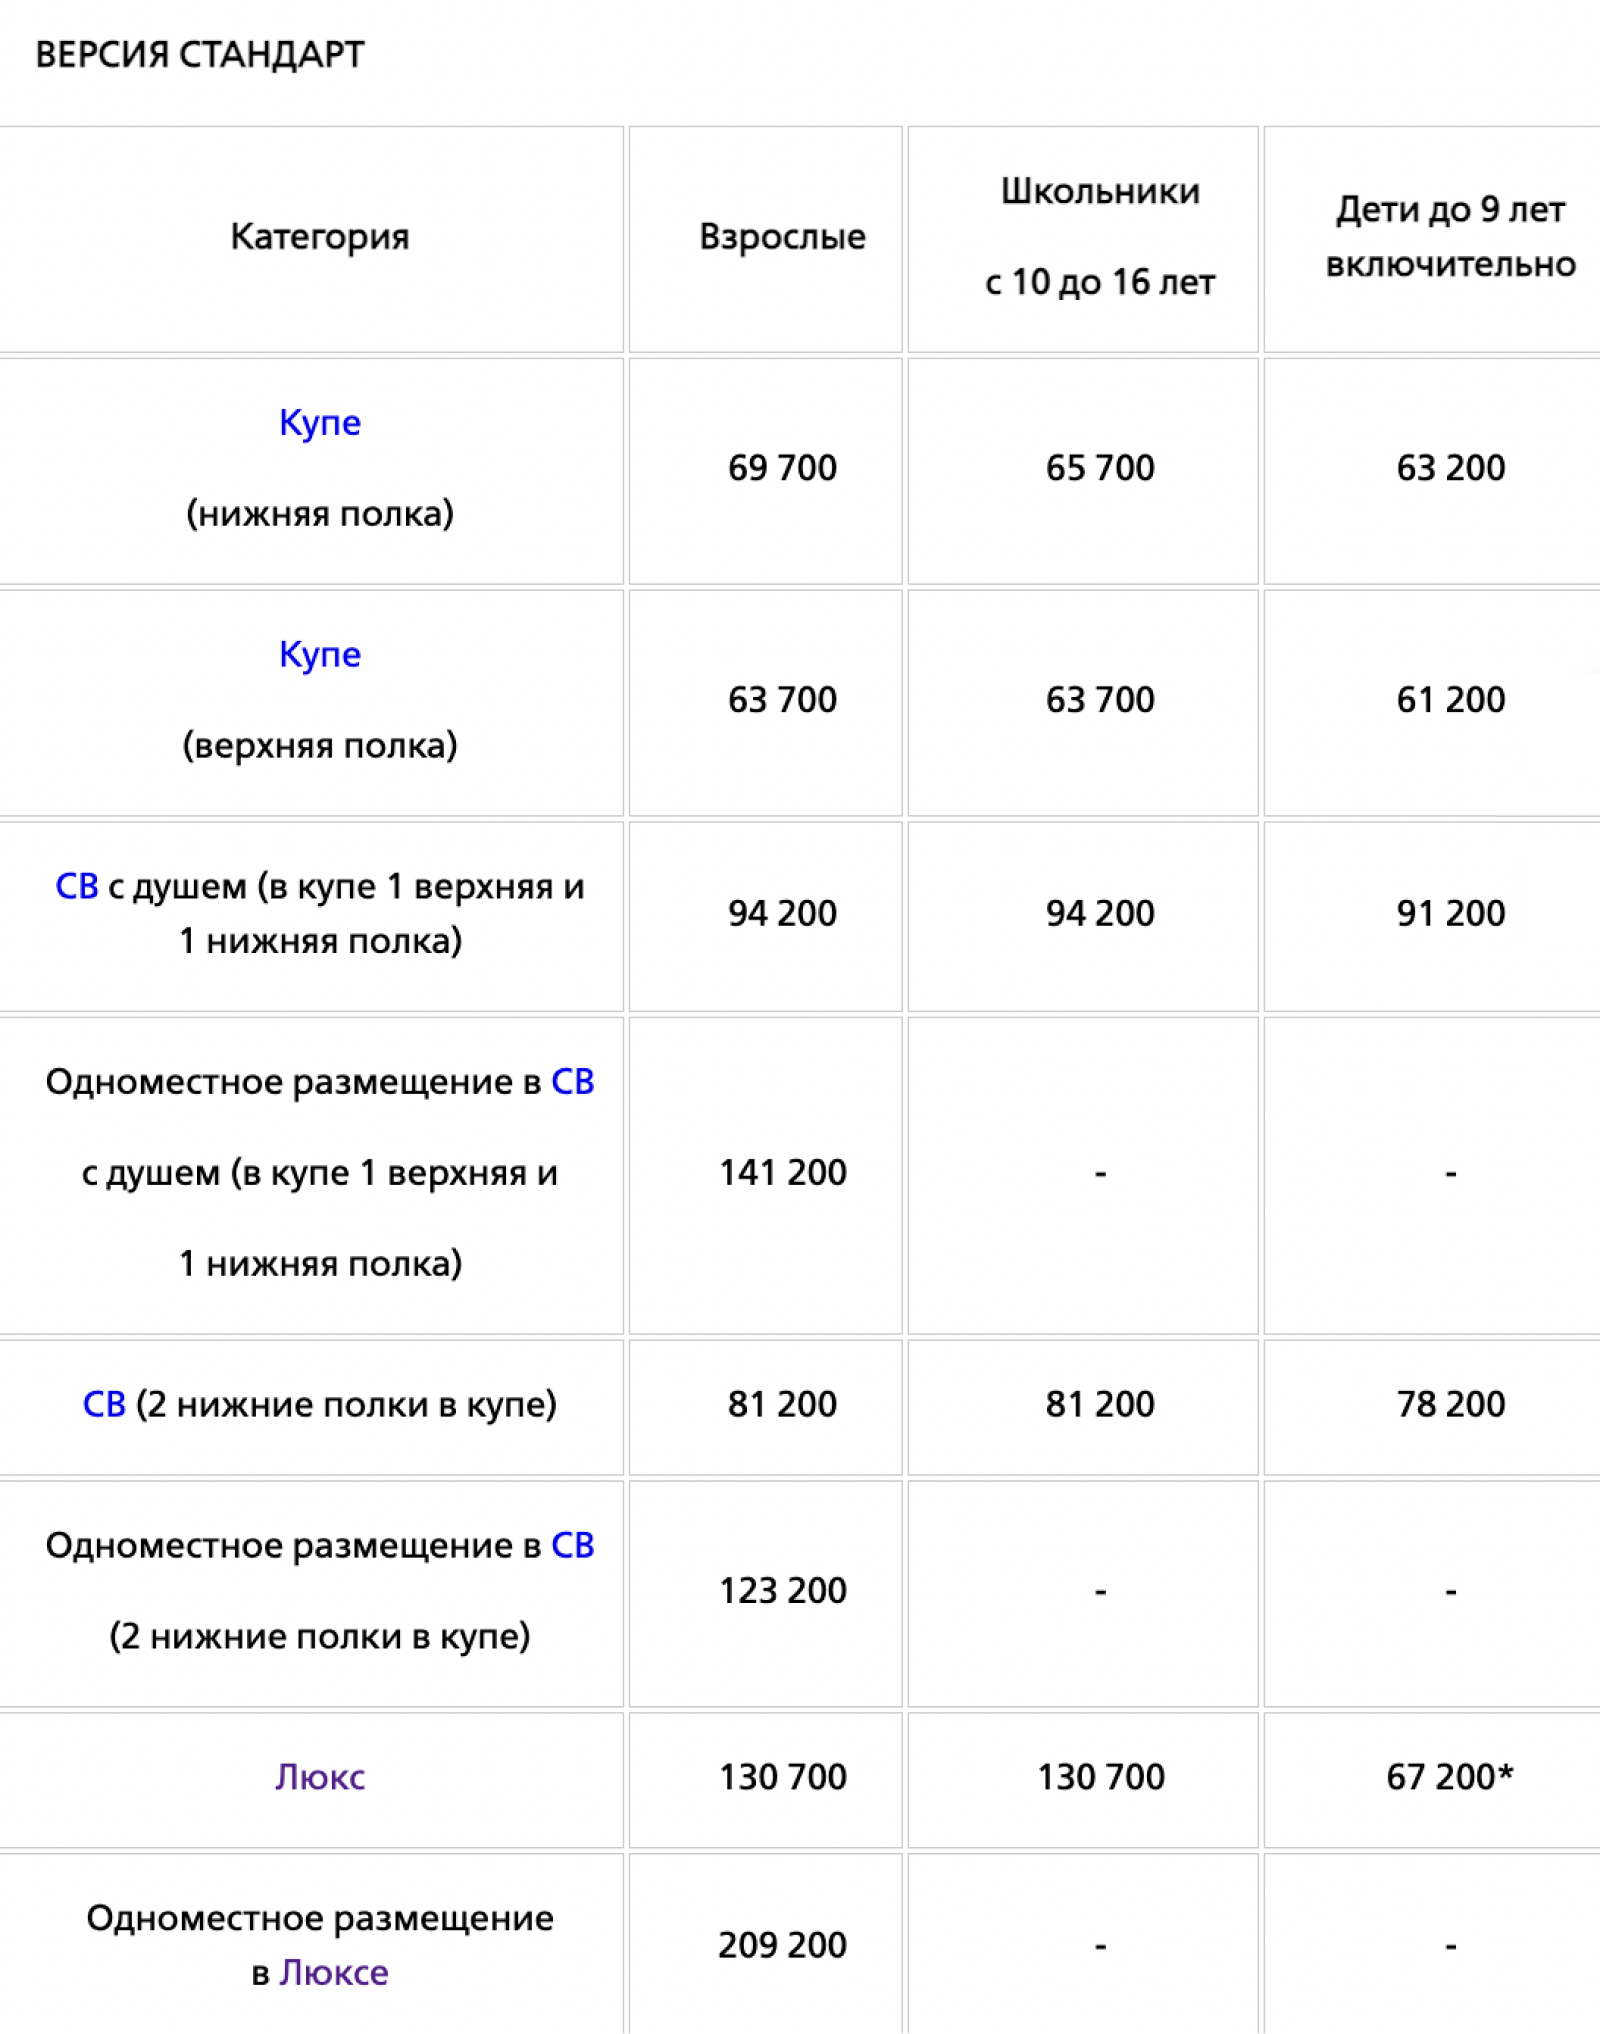 Цены на круиз «Жемчужина Кавказа» в 2022 году. Источник: rzdtour.com